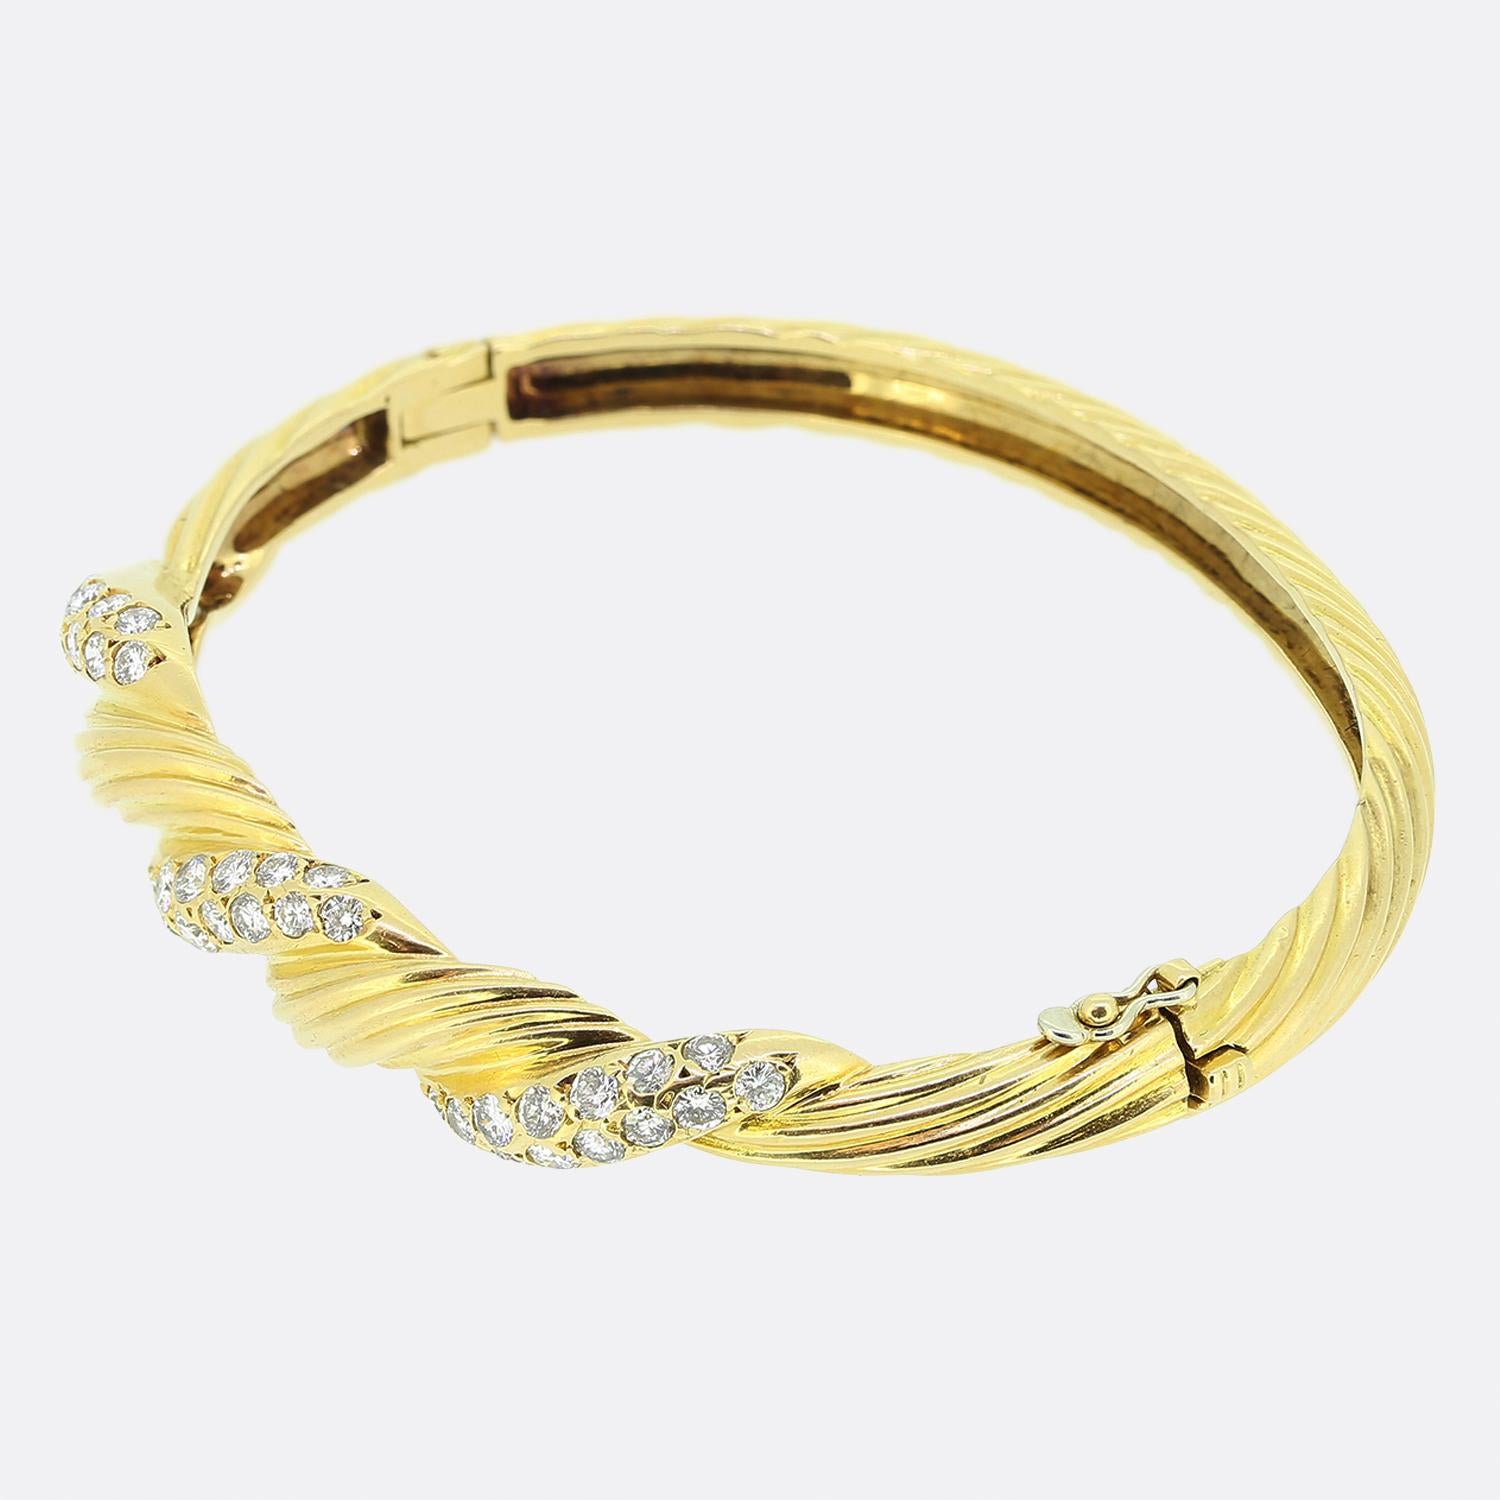 Nous avons ici un magnifique bracelet en diamants du créateur de bijoux de renommée mondiale Van Cleef and Arpels. Le bracelet présente 1,50 carats de diamants ronds de taille brillant parfaitement assortis, sertis dans un motif torsadé. Le bracelet